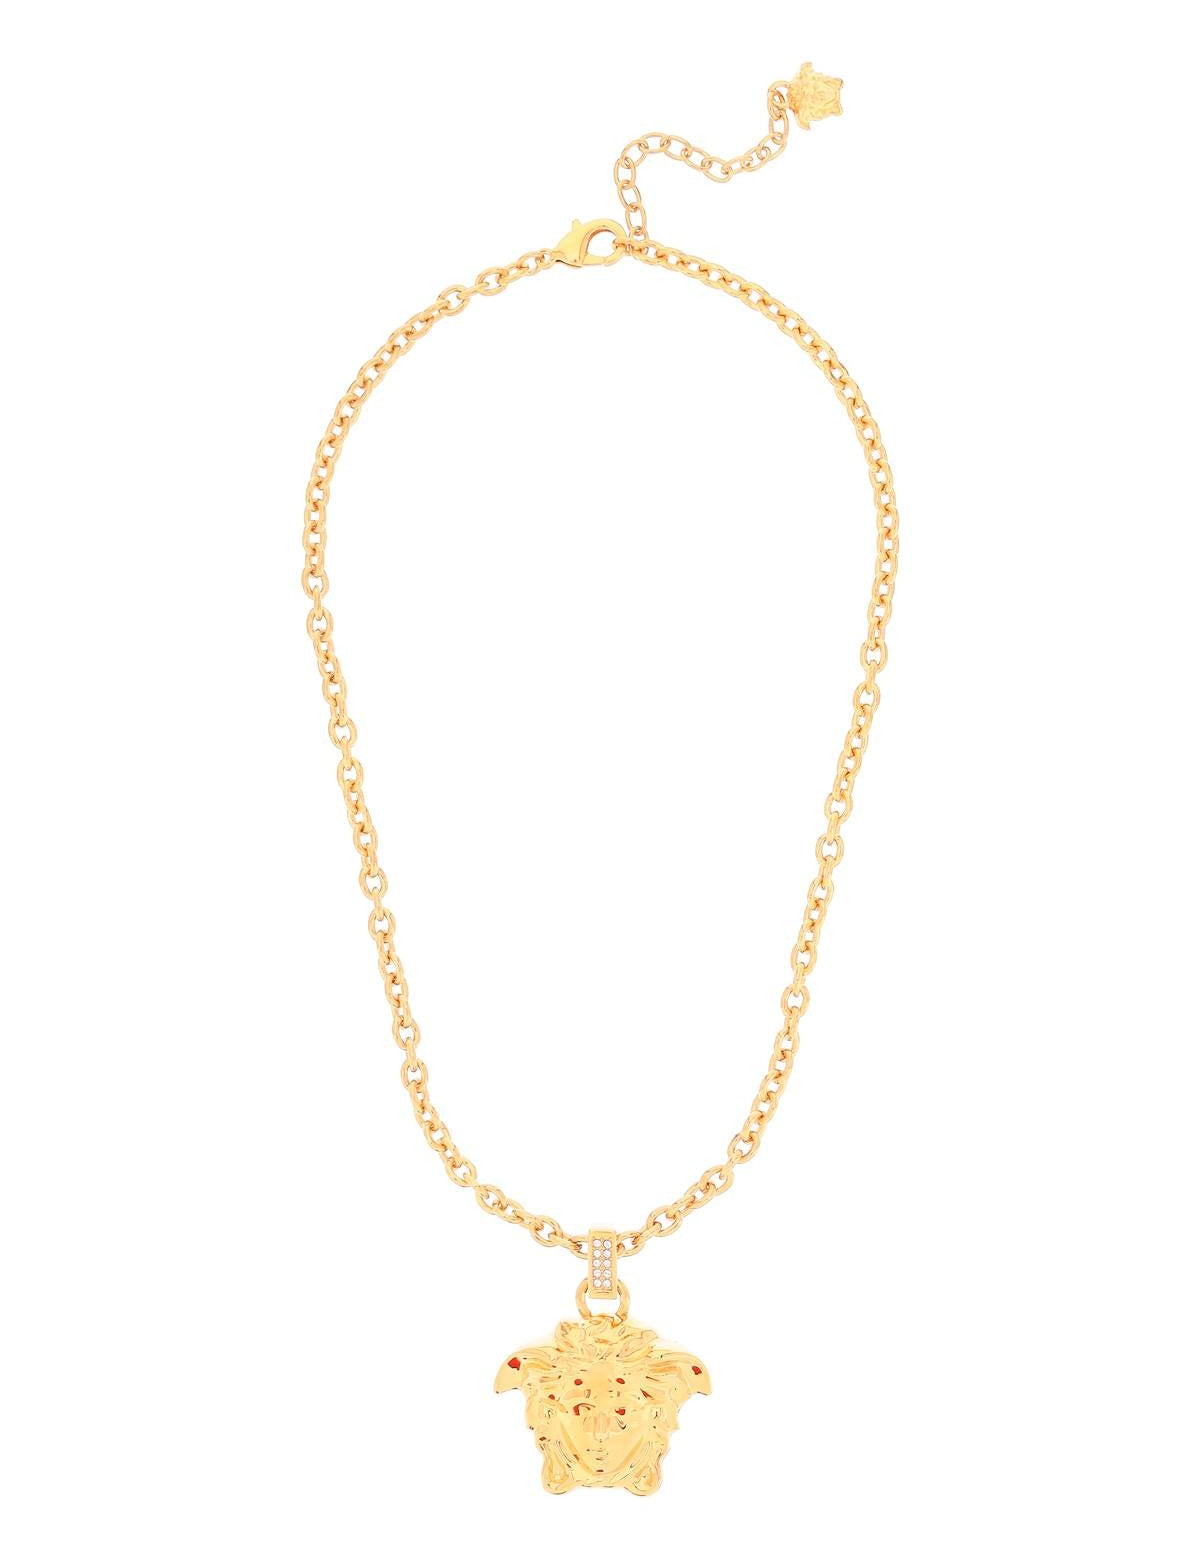 versace-la-medusa-necklace-with-crystals.jpg